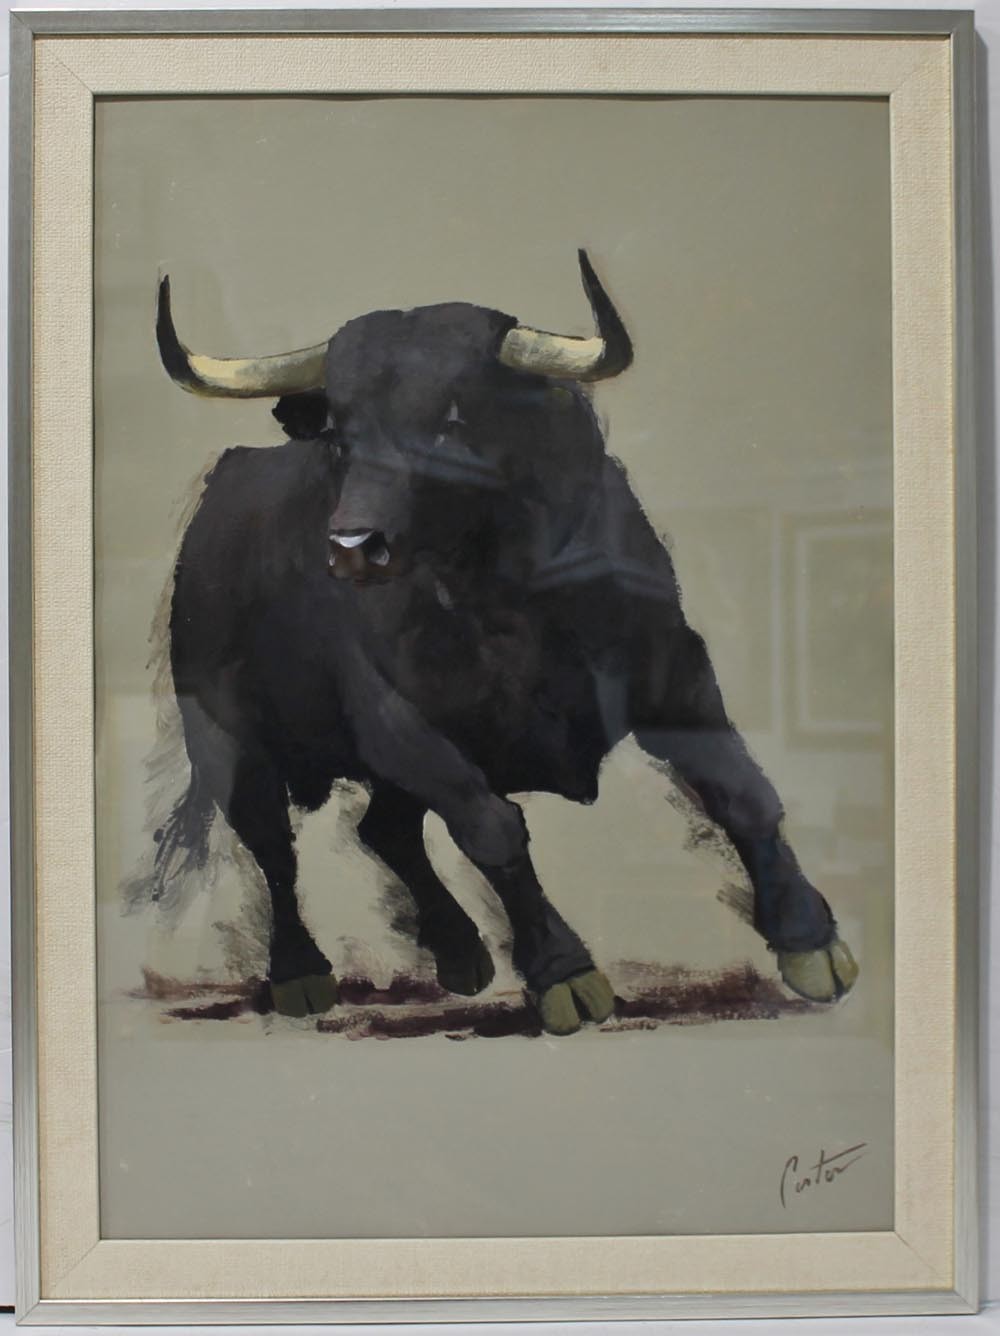 Enrique Pastor: That bull